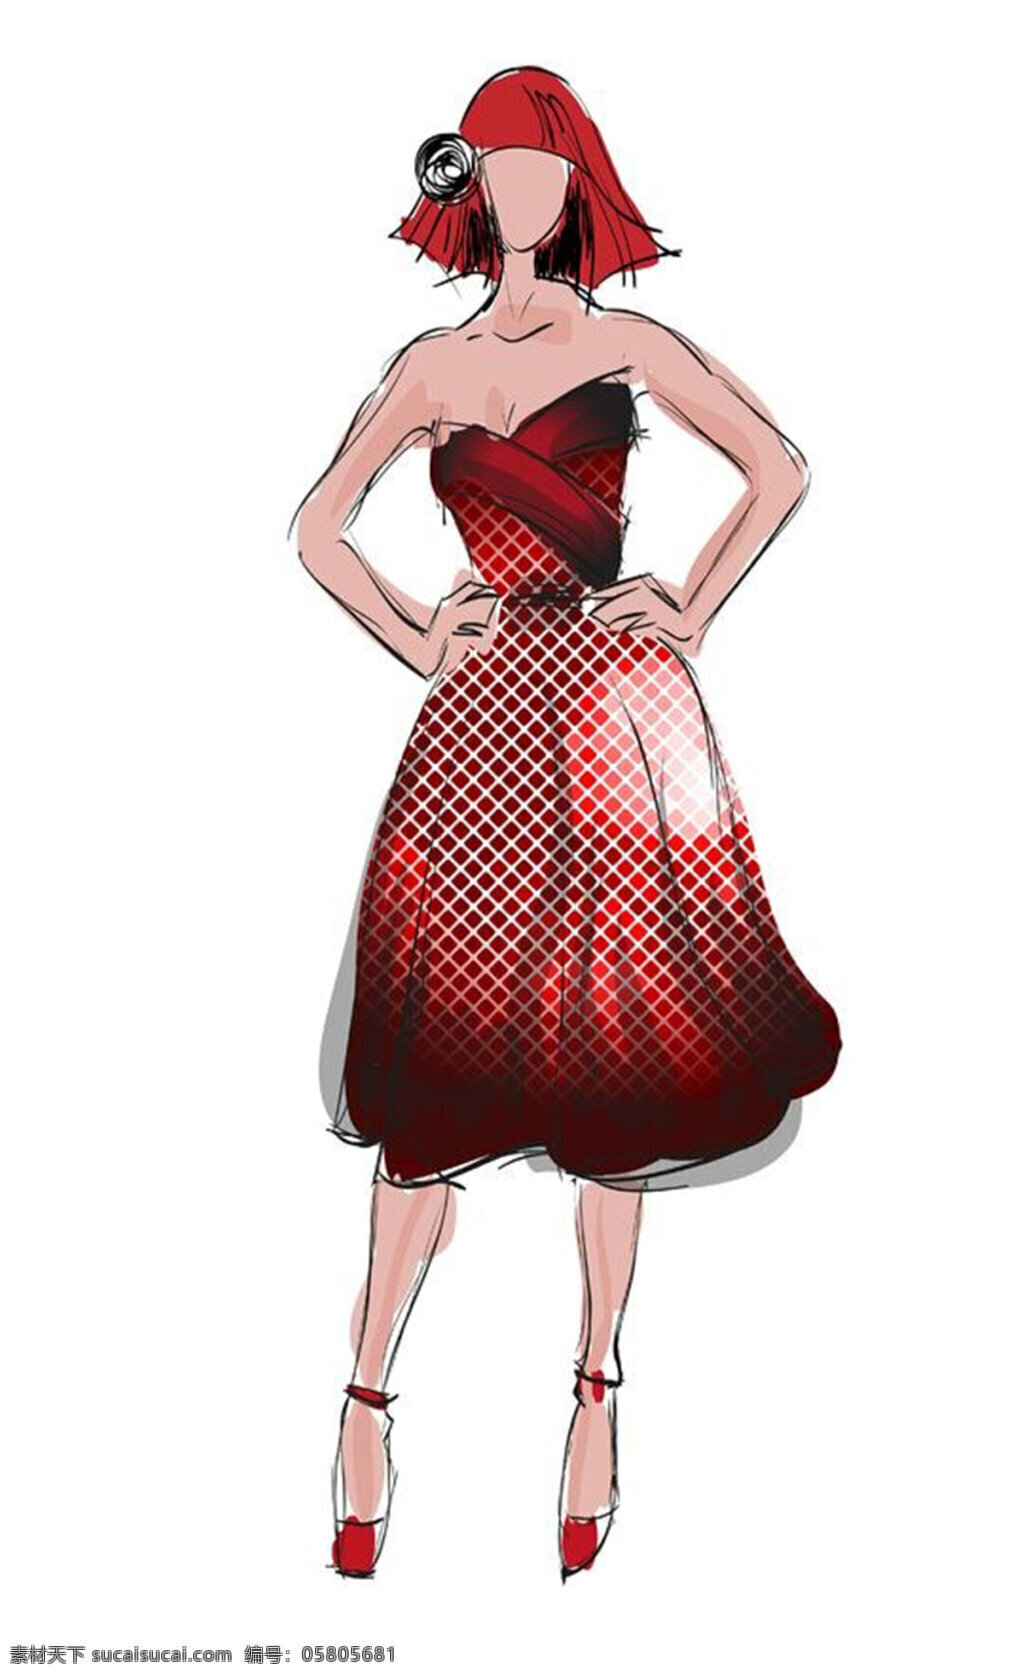 红色 连衣裙 设计图 服装设计 时尚女装 职业女装 职业装 女装设计 效果图 短裙 衬衫 服装 服装效果图